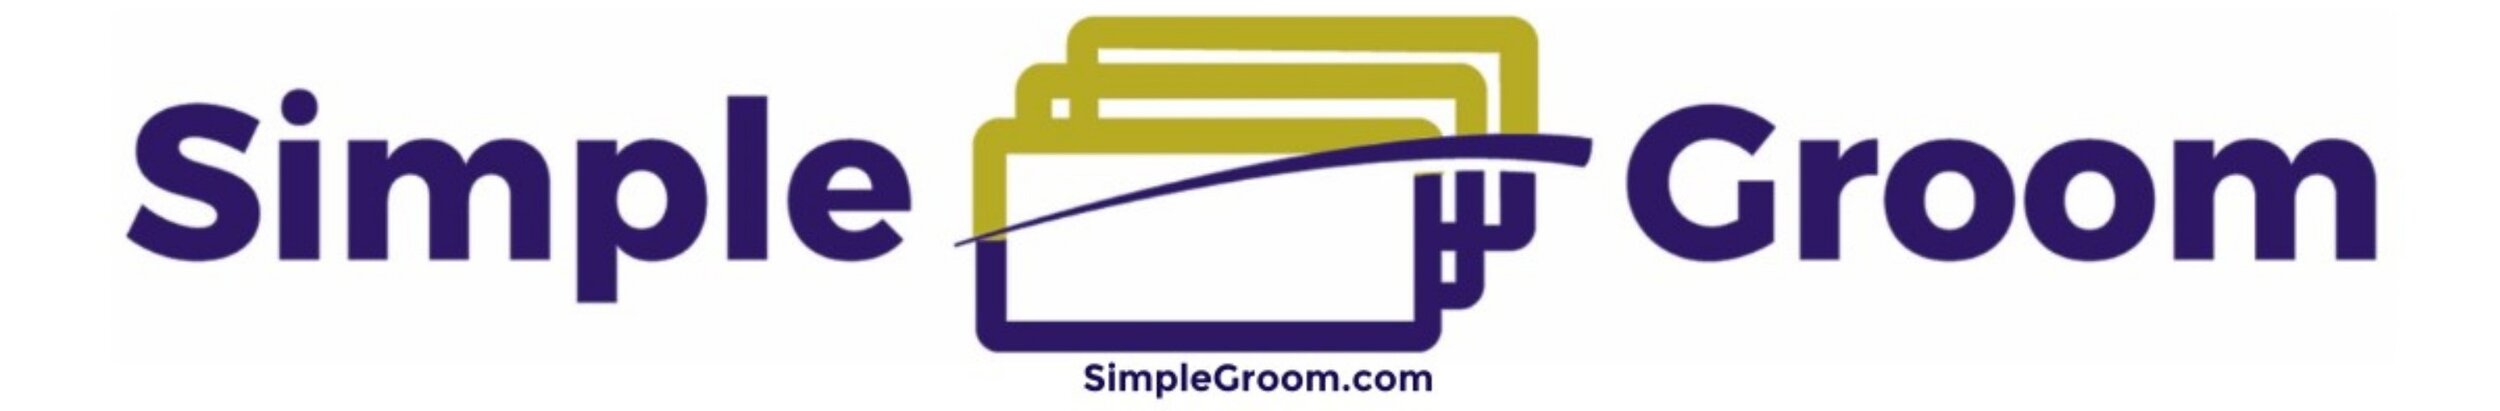 Simple Groom - Dog Grooming Tables